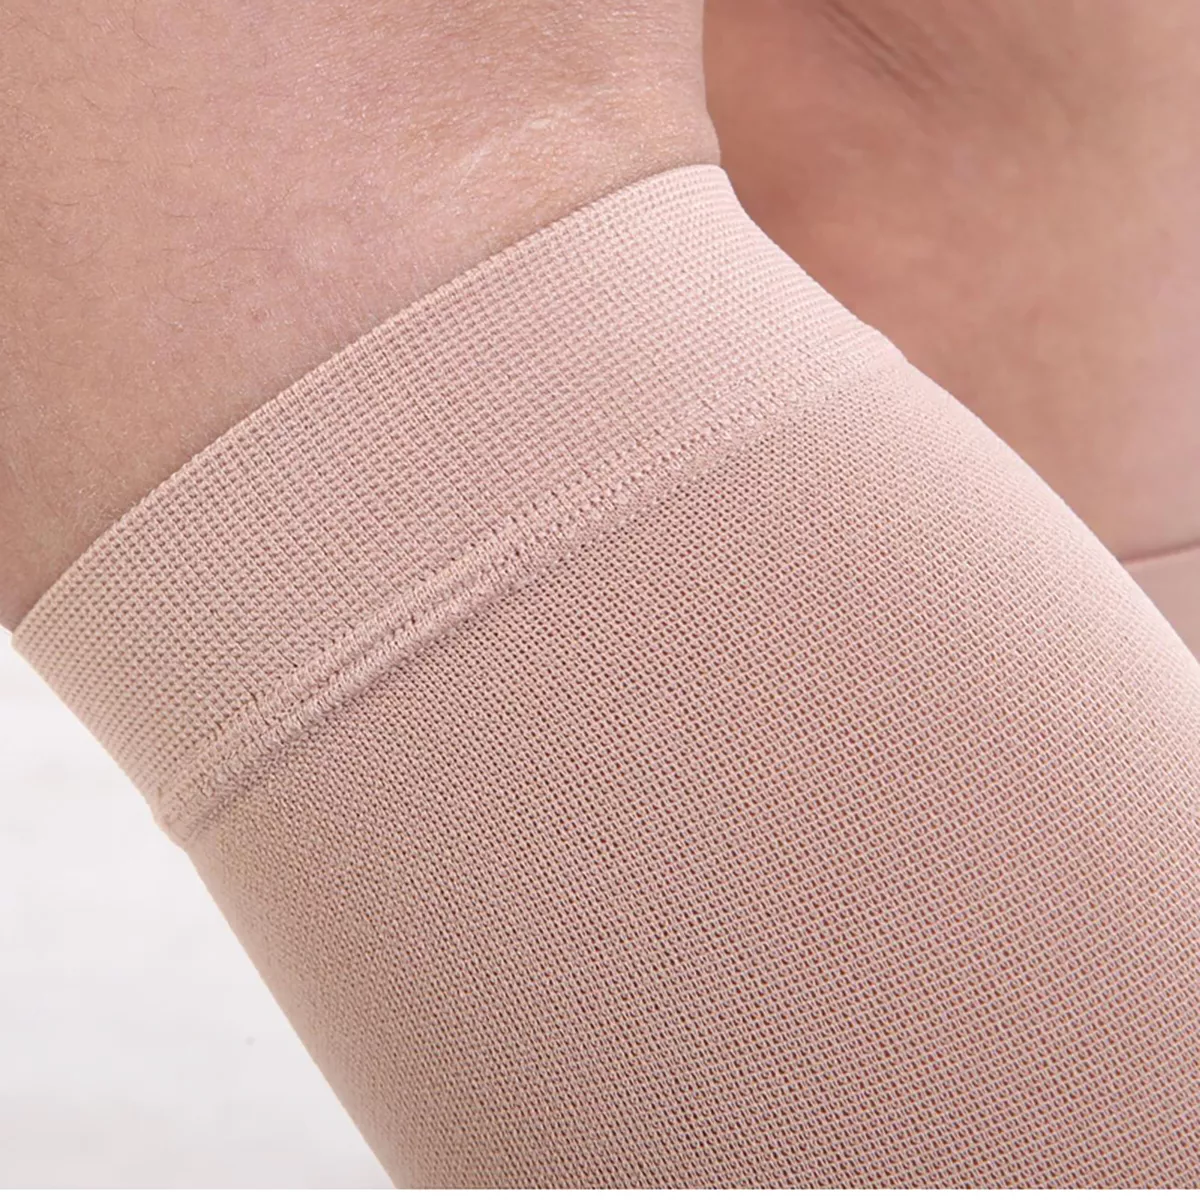 Varcoh ® 40-50 mmHg Men Calf Sleeve Compression Socks Beige